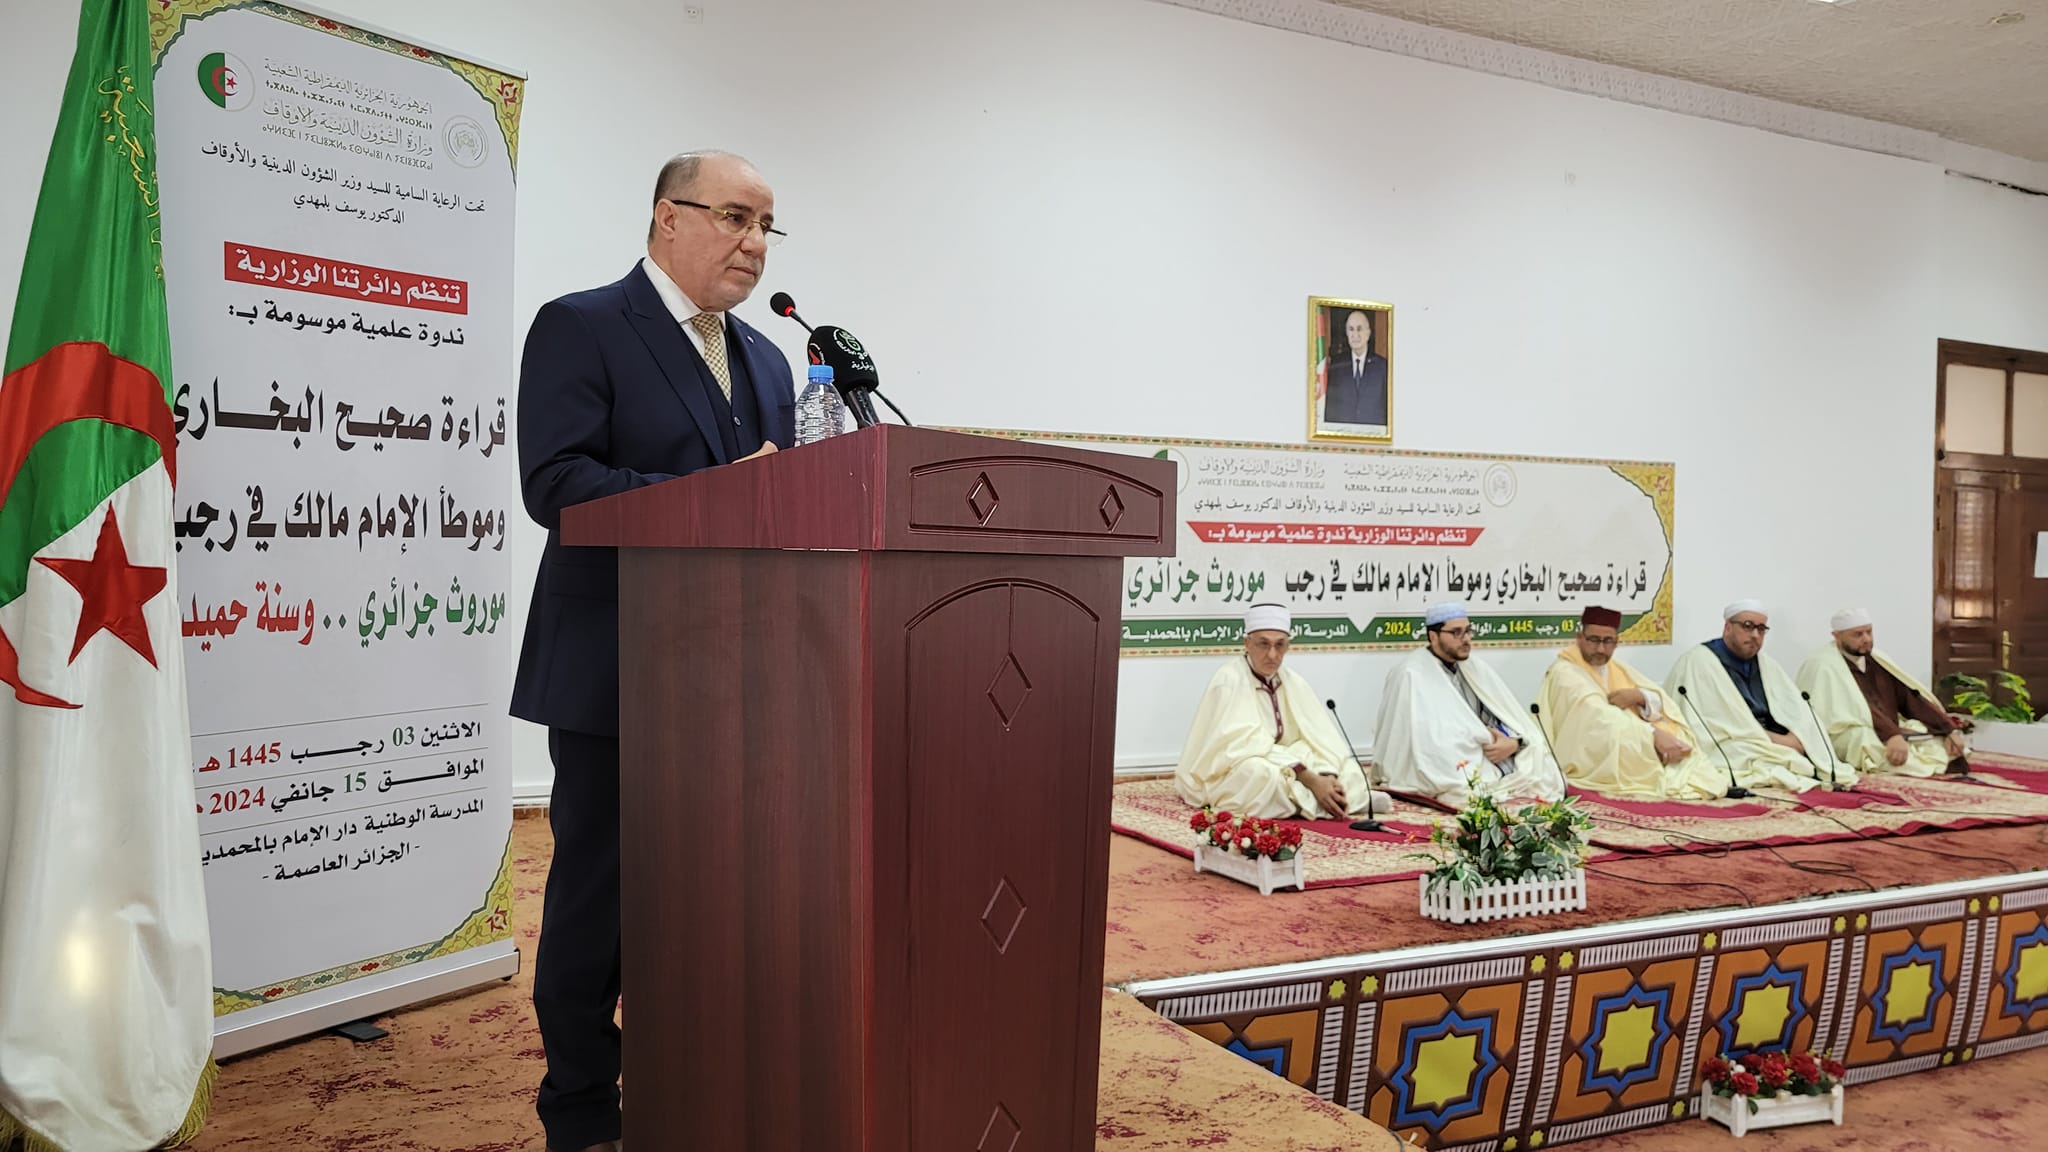 Le ministre des affaires religieuses annonce le début de la lecture du Sahih El-Boukhari et du Mouwatta de l'imam Malik à travers les mosquées